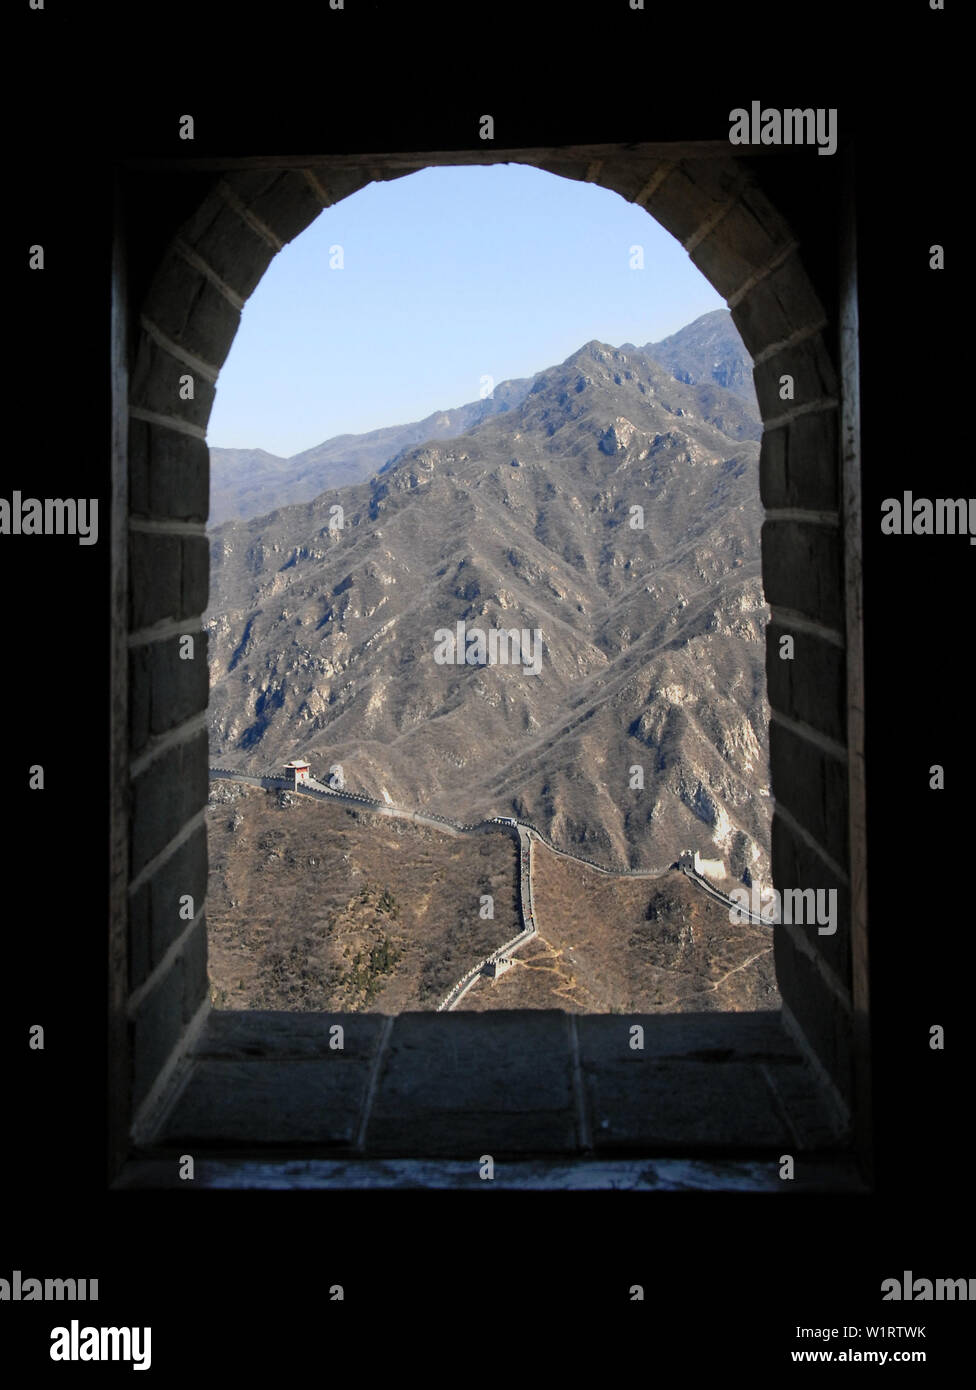 Die große Mauer von China. Einen malerischen Blick auf den Abschnitt der Großen Mauer bei Juyongguan durch ein Fenster. Juyongguan der Chinesischen Mauer in der Nähe von Beijing. Stockfoto